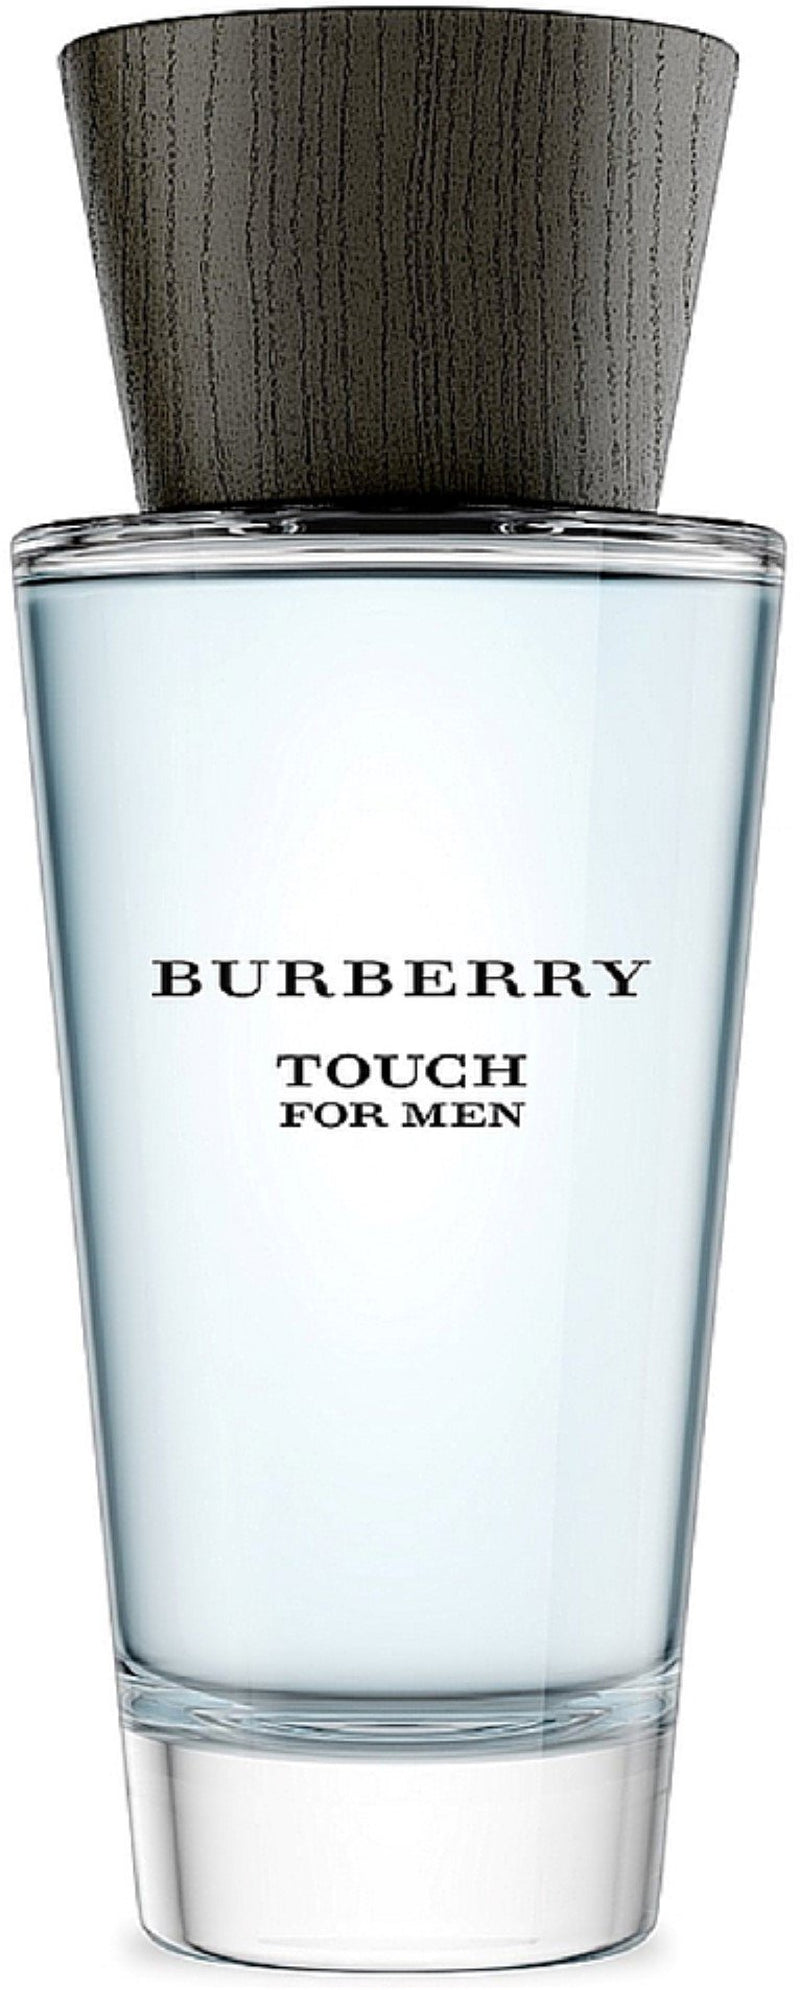 Burberry Touch Eau De Toilette, Cologne for Men, 3.3 Oz